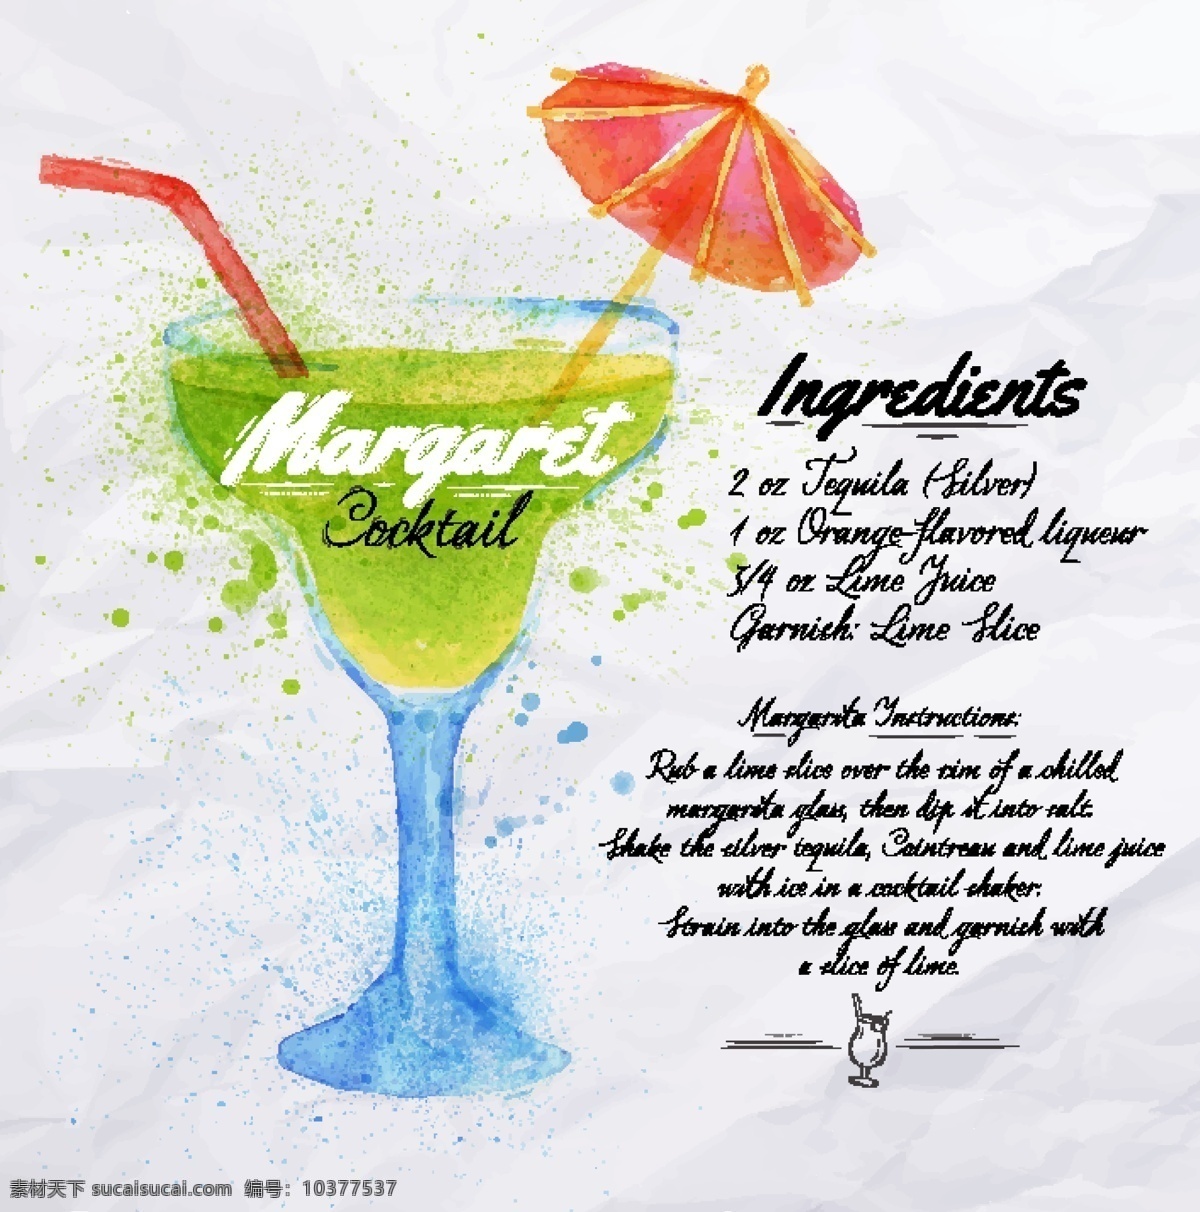 创意 英文 饮料 菜单 杯子 果汁 矢量图 设计素材 菜单素材 雨伞 吸管 英文素材 彩色元素